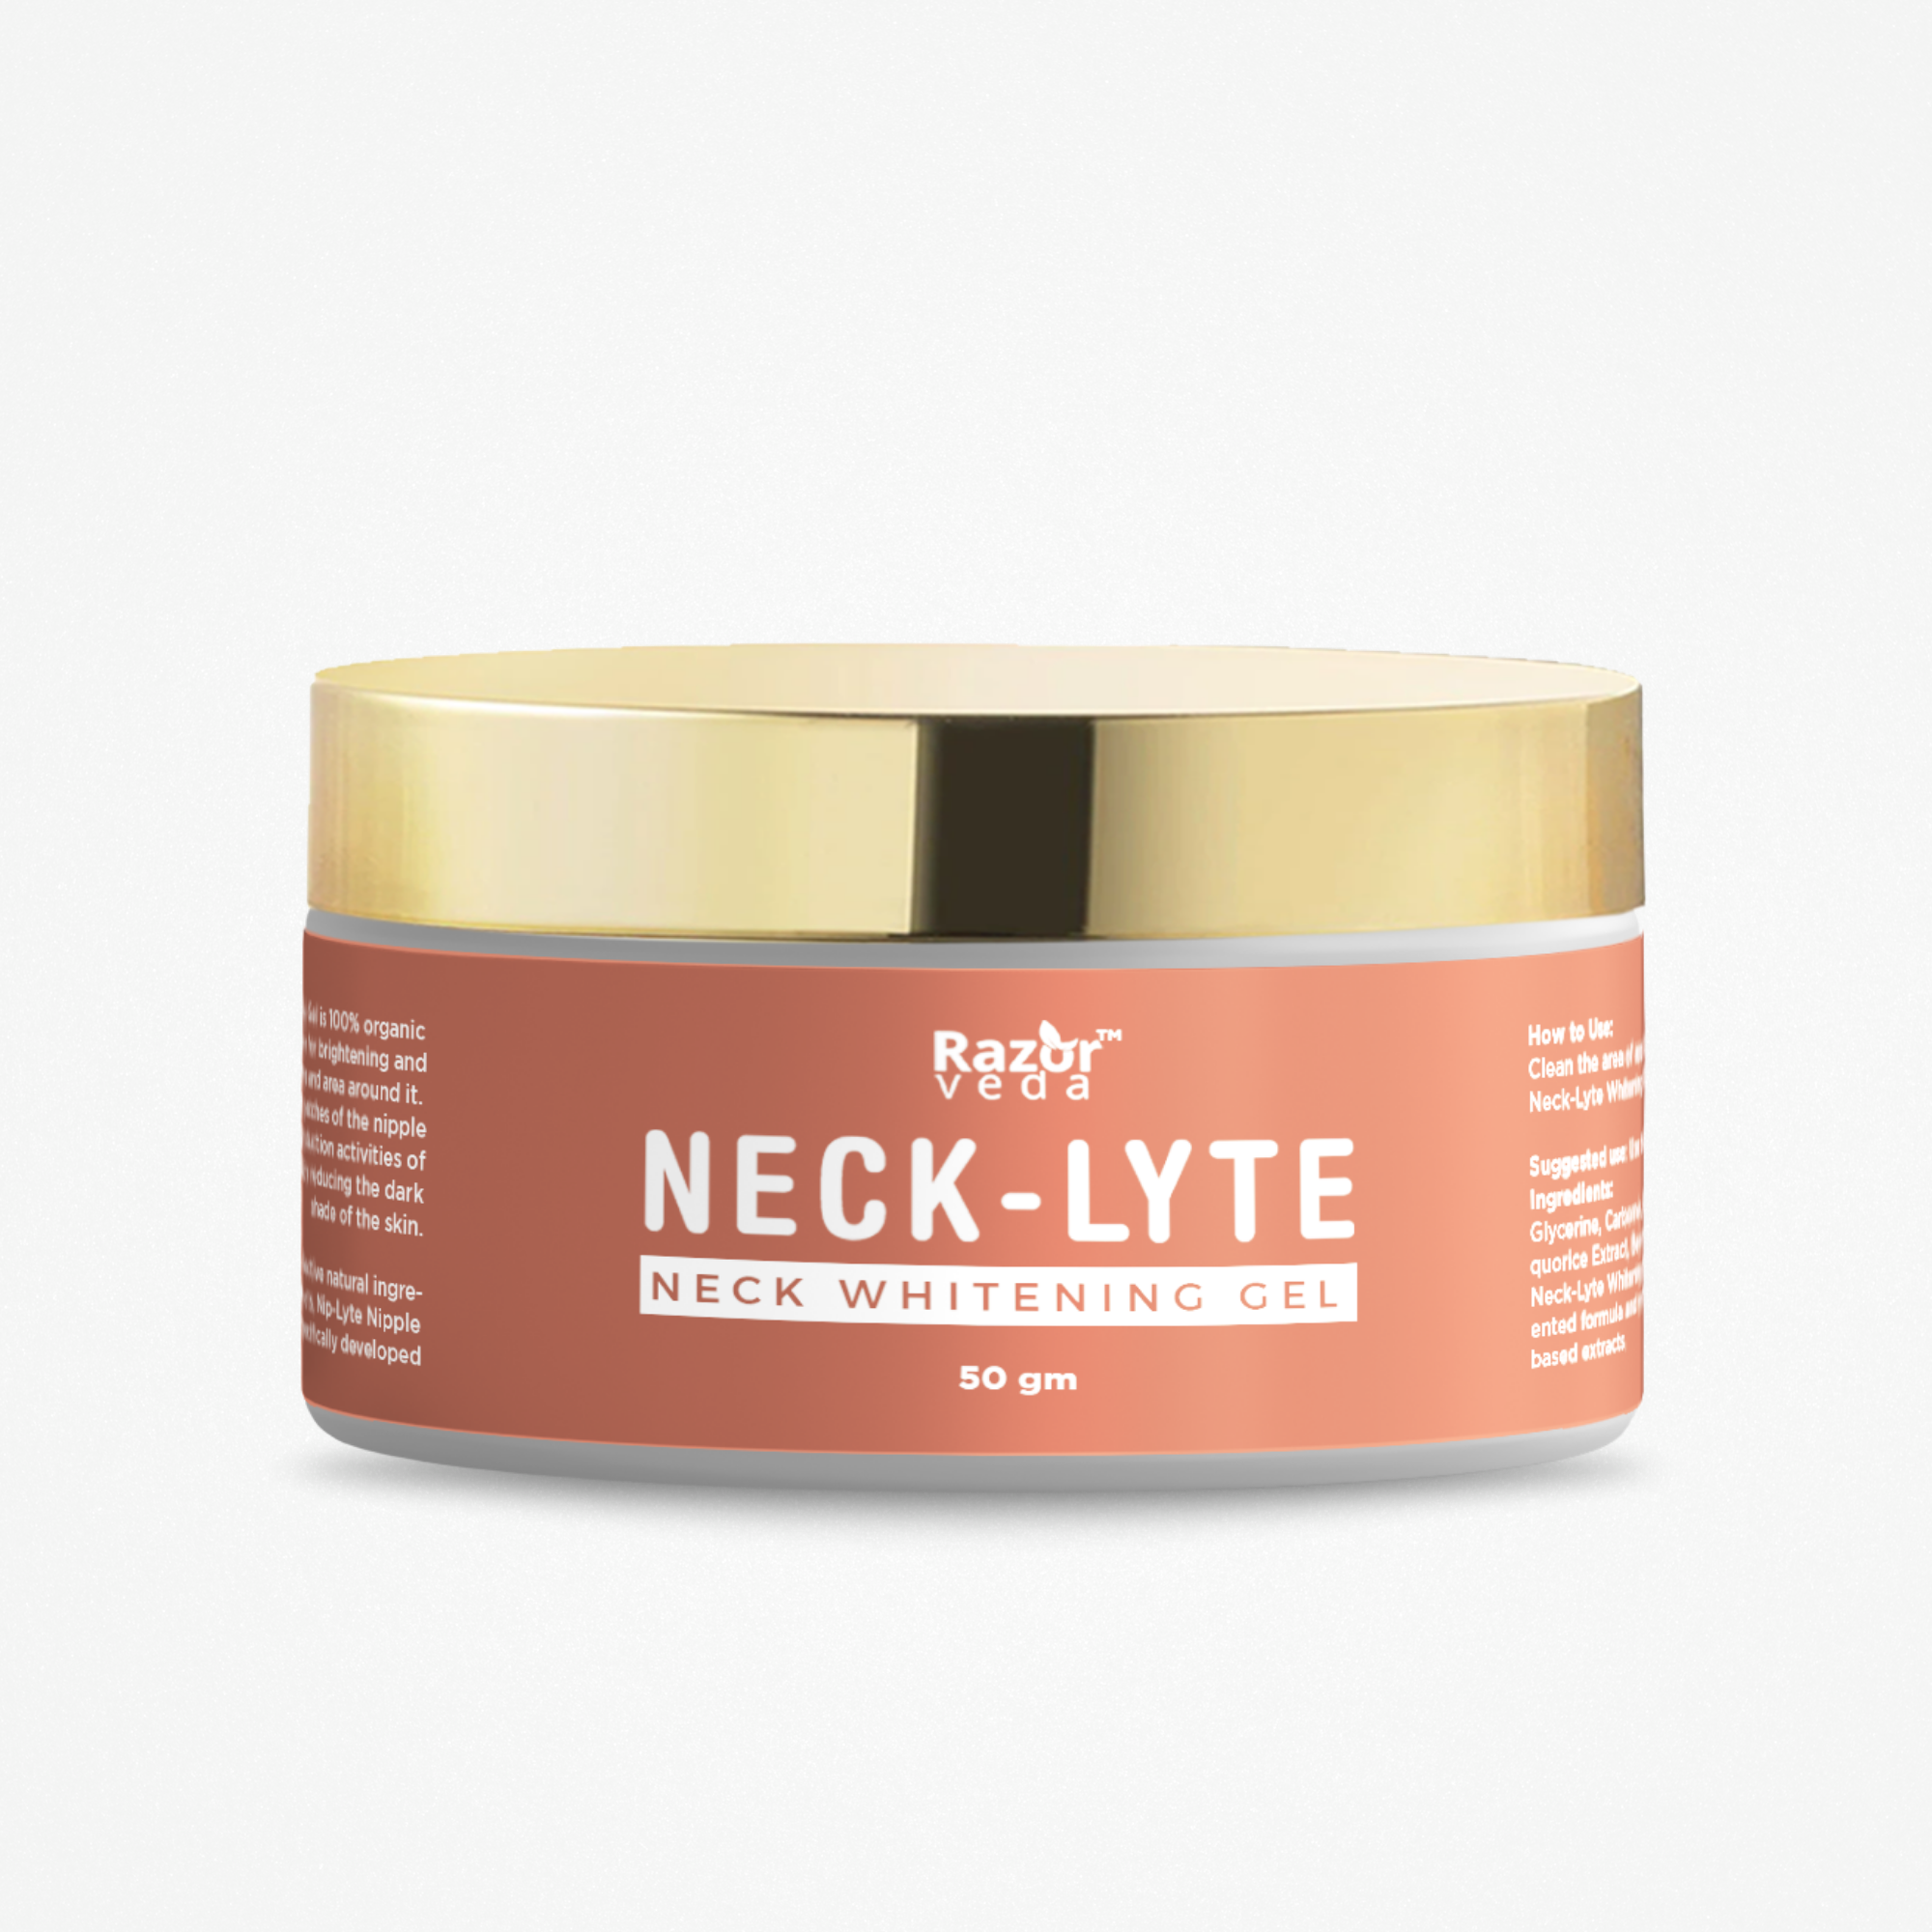 Neck-Lyte Neck Whitening & Brightening Gel Razorveda